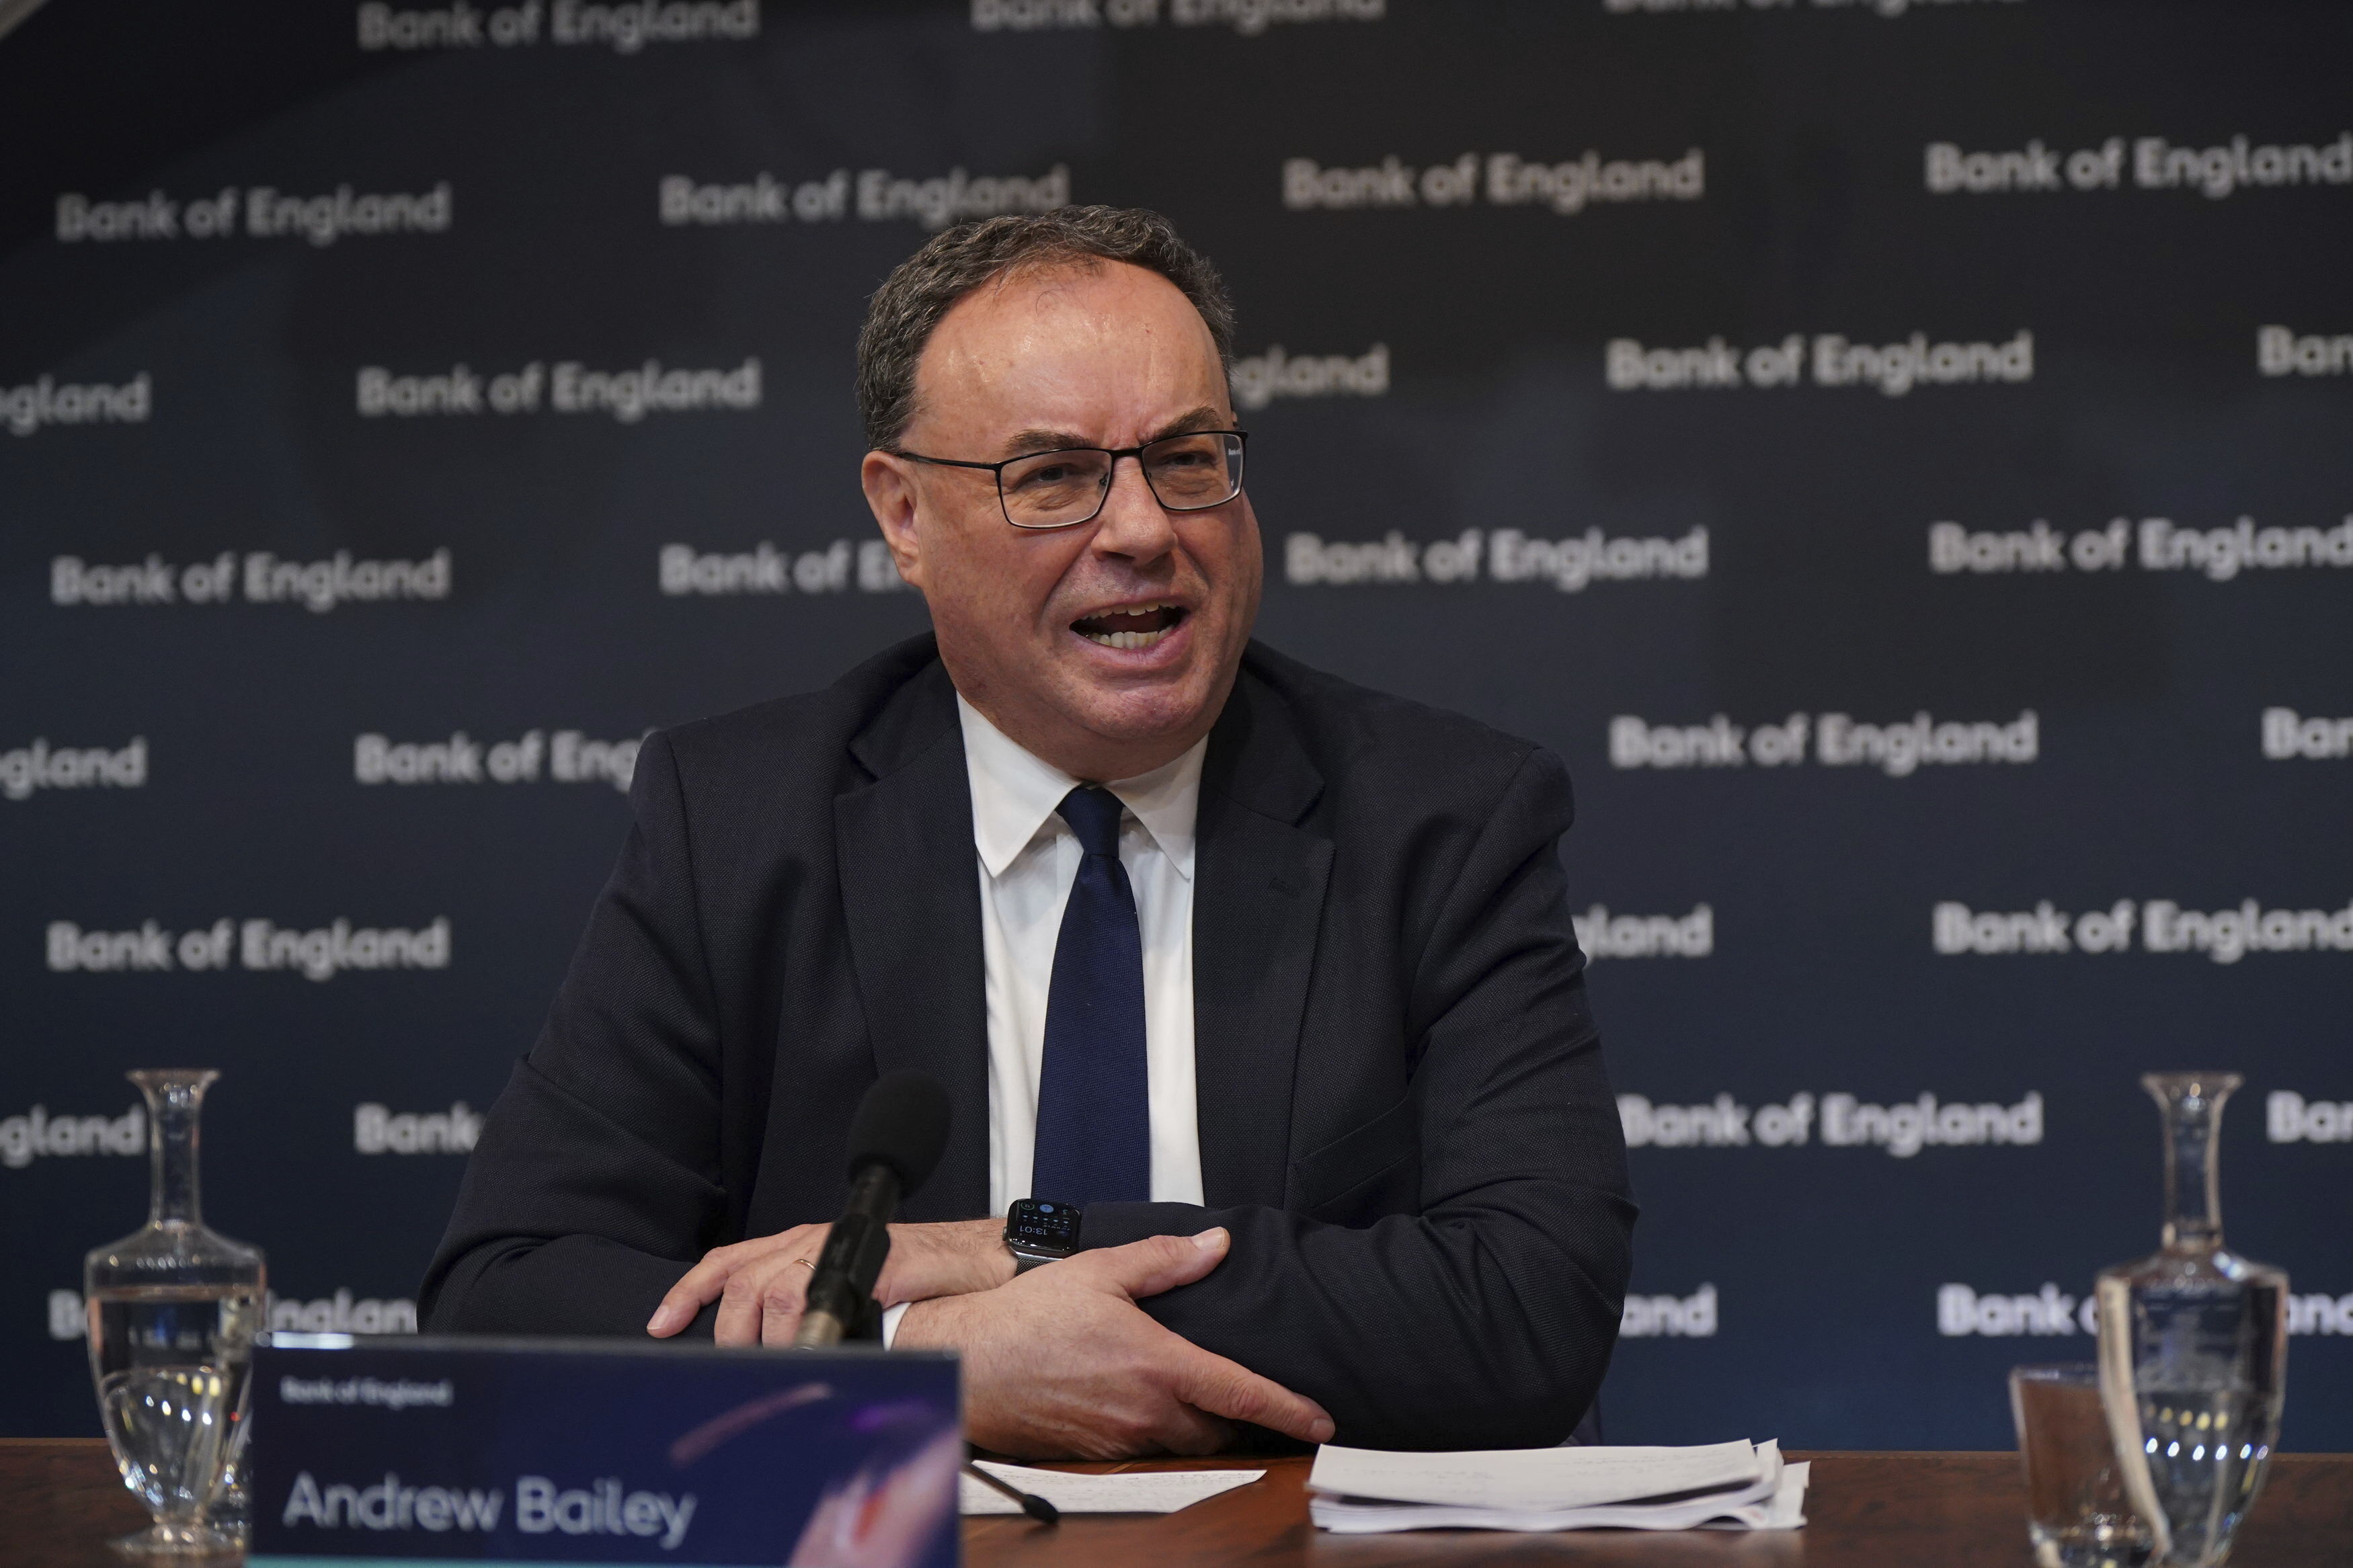 حاكم بنك انجلترا اندرو بايلي أثناء المؤتمر الصحافي المخصص للتقرير عن السياسة المالية في لندن بتاريخ 02 فبراير 2023